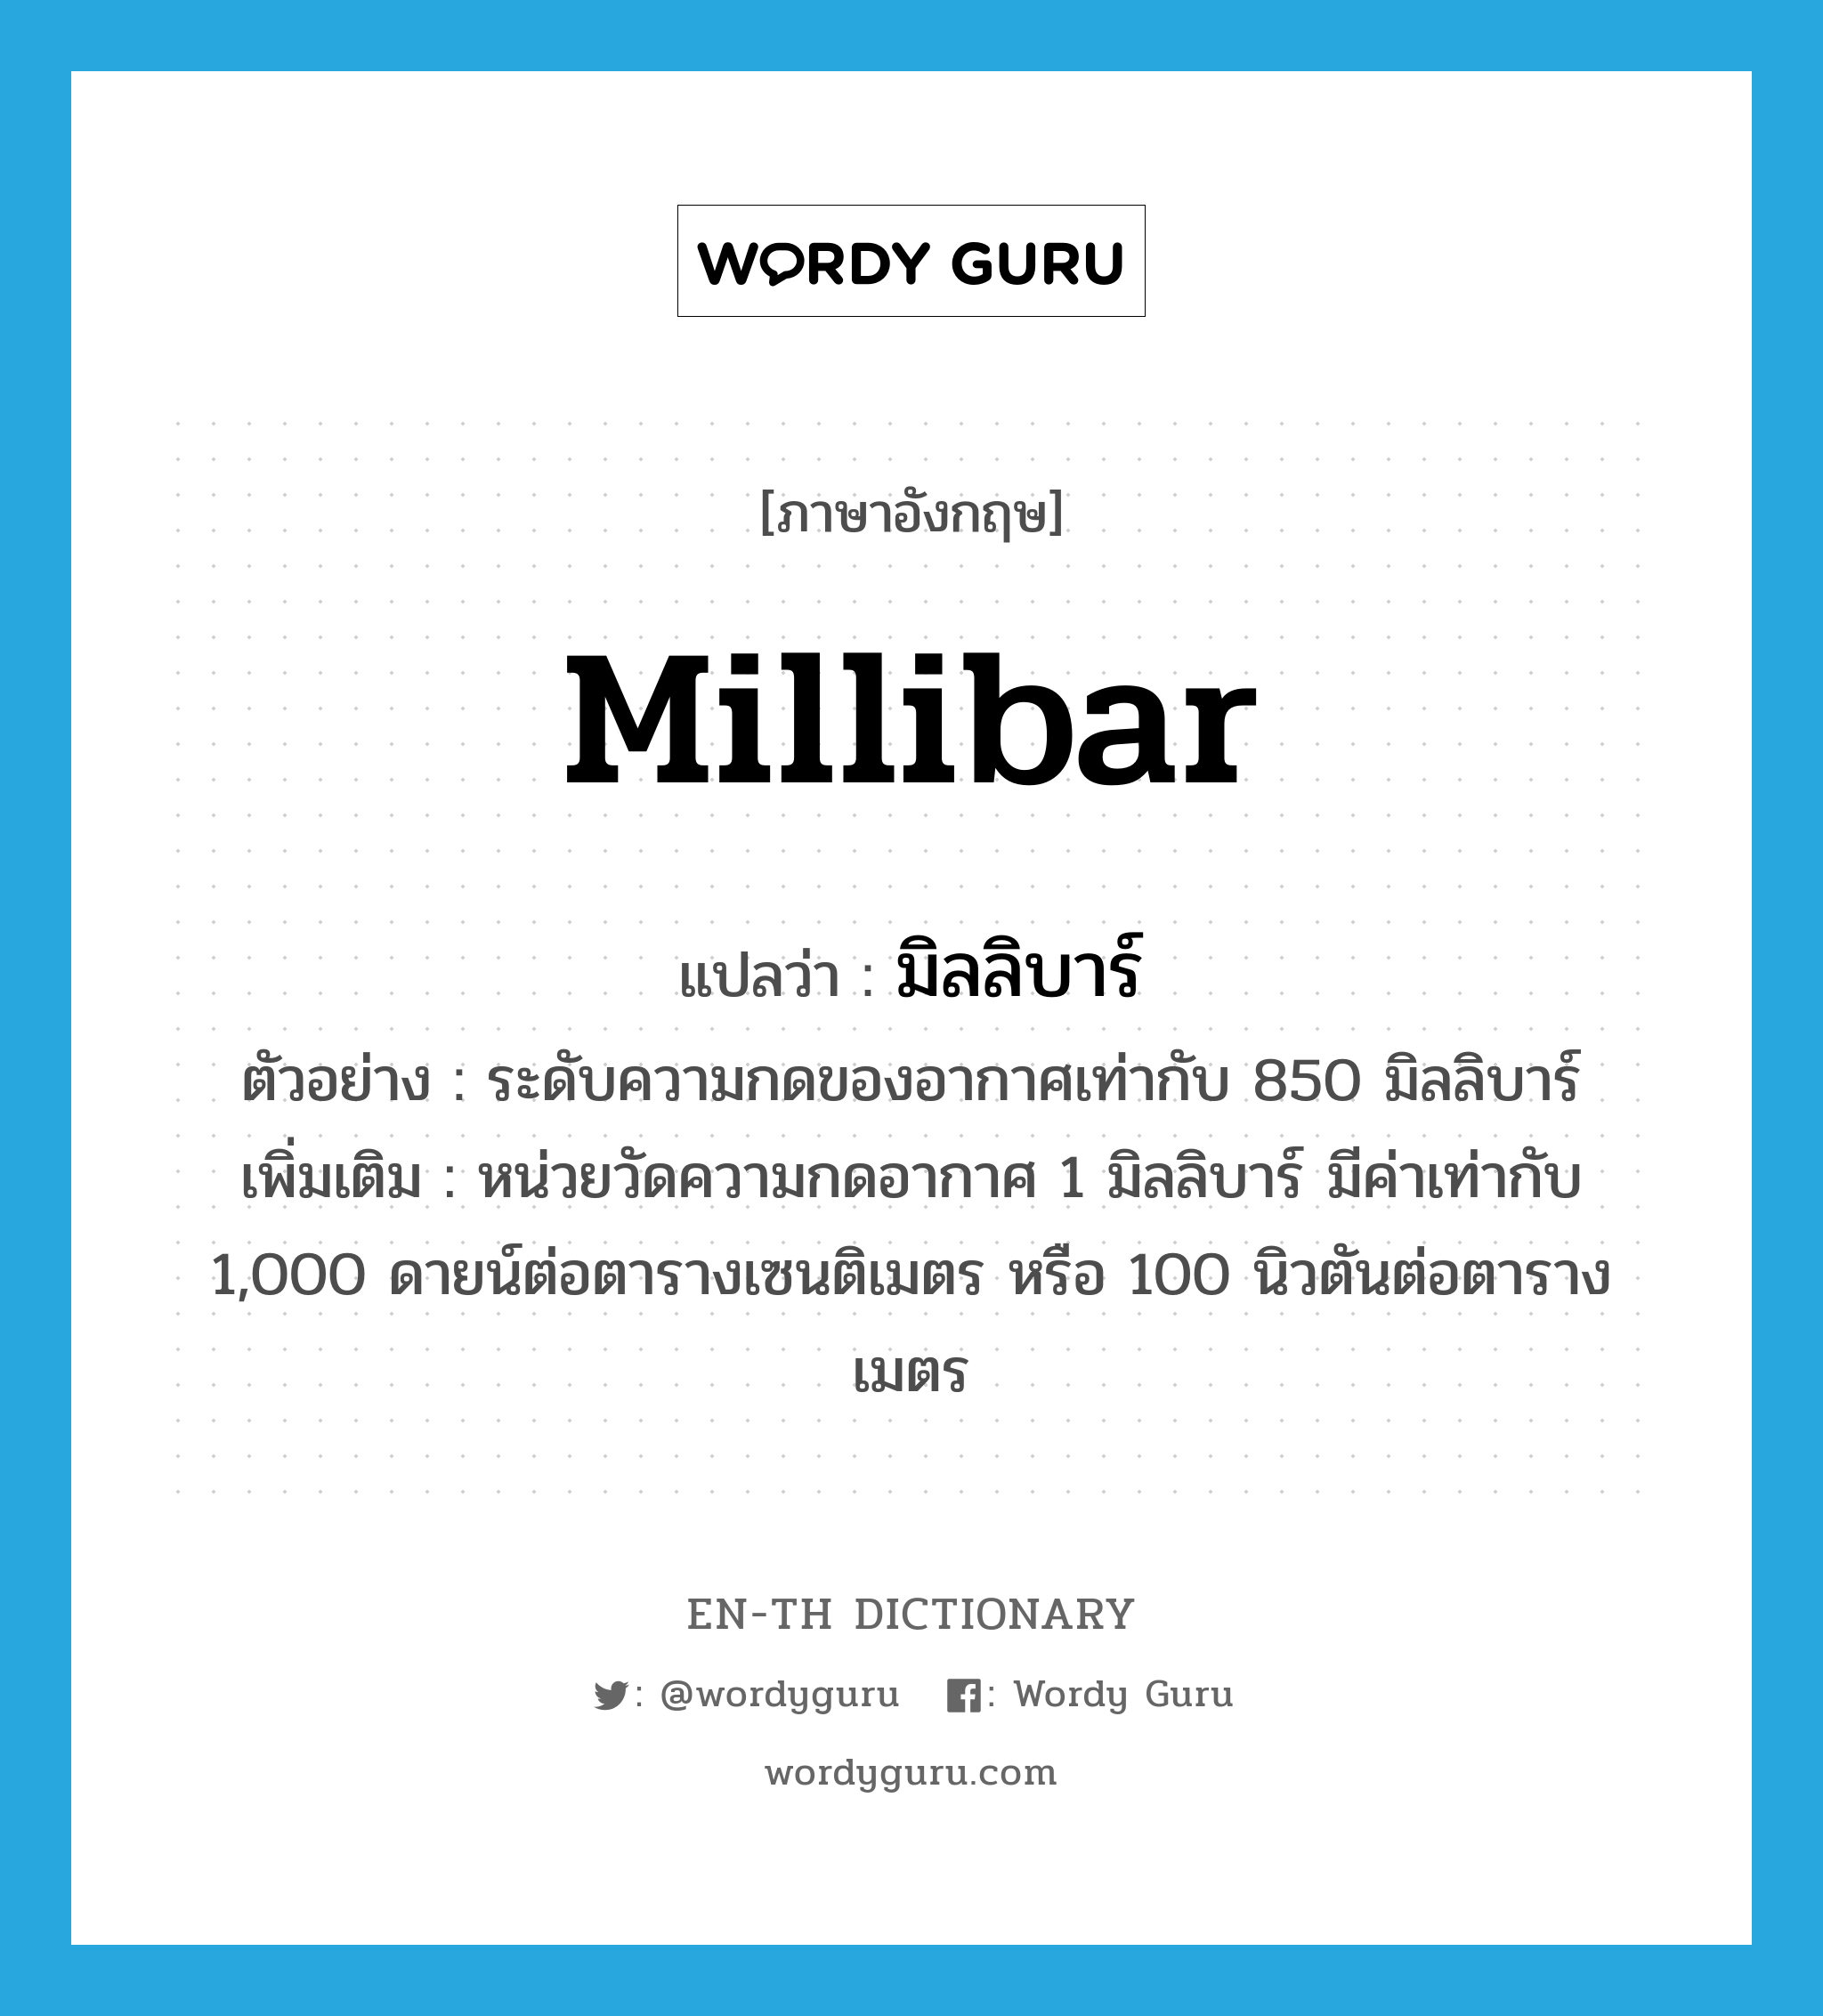 millibar แปลว่า? คำศัพท์ในกลุ่มประเภท CLAS, คำศัพท์ภาษาอังกฤษ millibar แปลว่า มิลลิบาร์ ประเภท CLAS ตัวอย่าง ระดับความกดของอากาศเท่ากับ 850 มิลลิบาร์ เพิ่มเติม หน่วยวัดความกดอากาศ 1 มิลลิบาร์ มีค่าเท่ากับ 1,000 ดายน์ต่อตารางเซนติเมตร หรือ 100 นิวตันต่อตารางเมตร หมวด CLAS